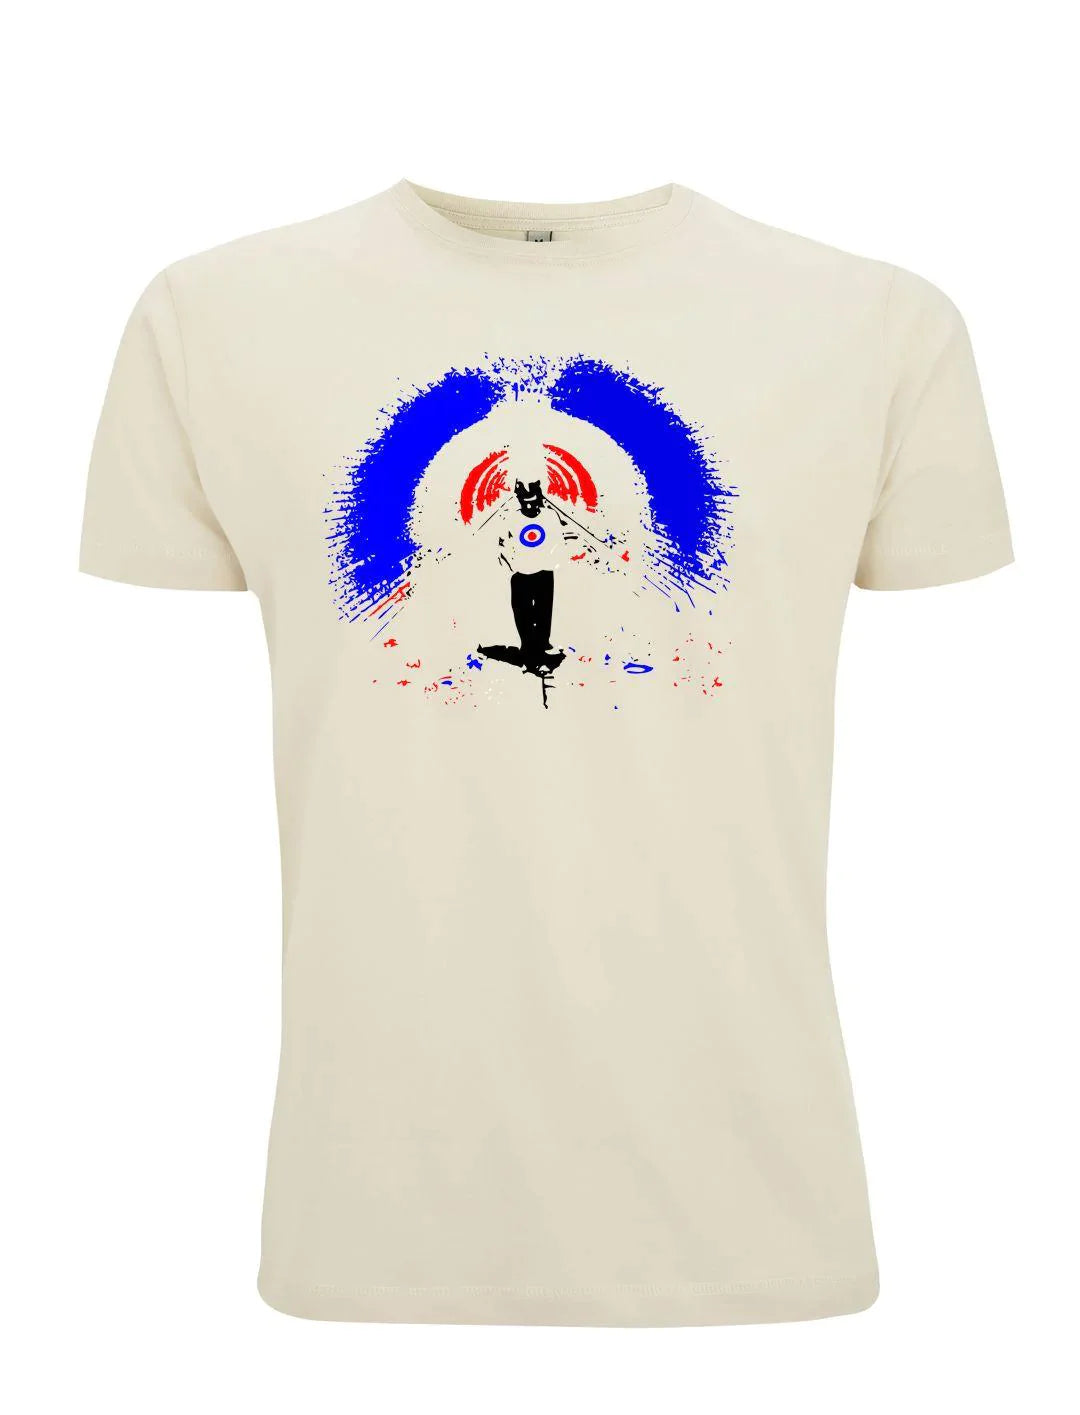 T-Shirt, The Who, Quadrophenia 